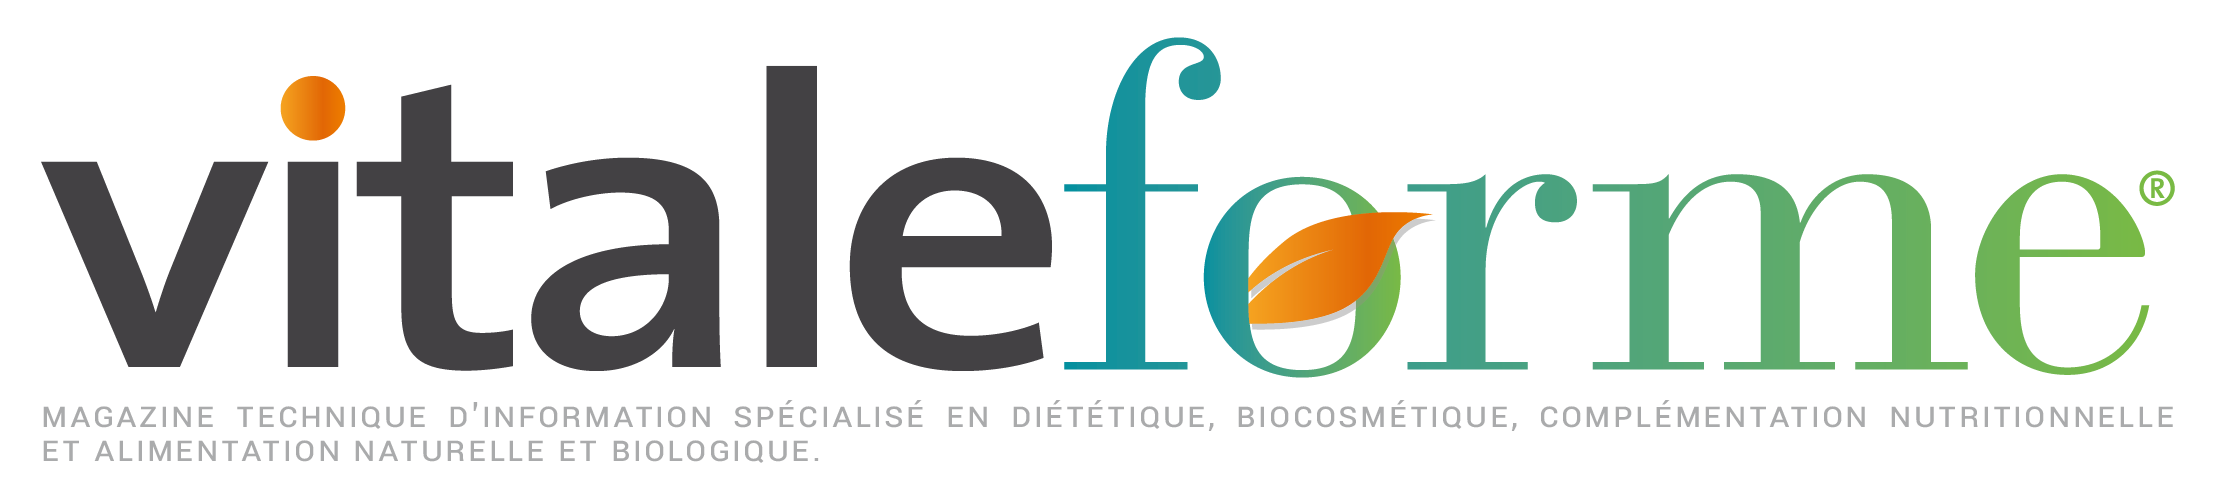 Vitaleforme - Actualité et information diététique, biologique et alimentation naturelle